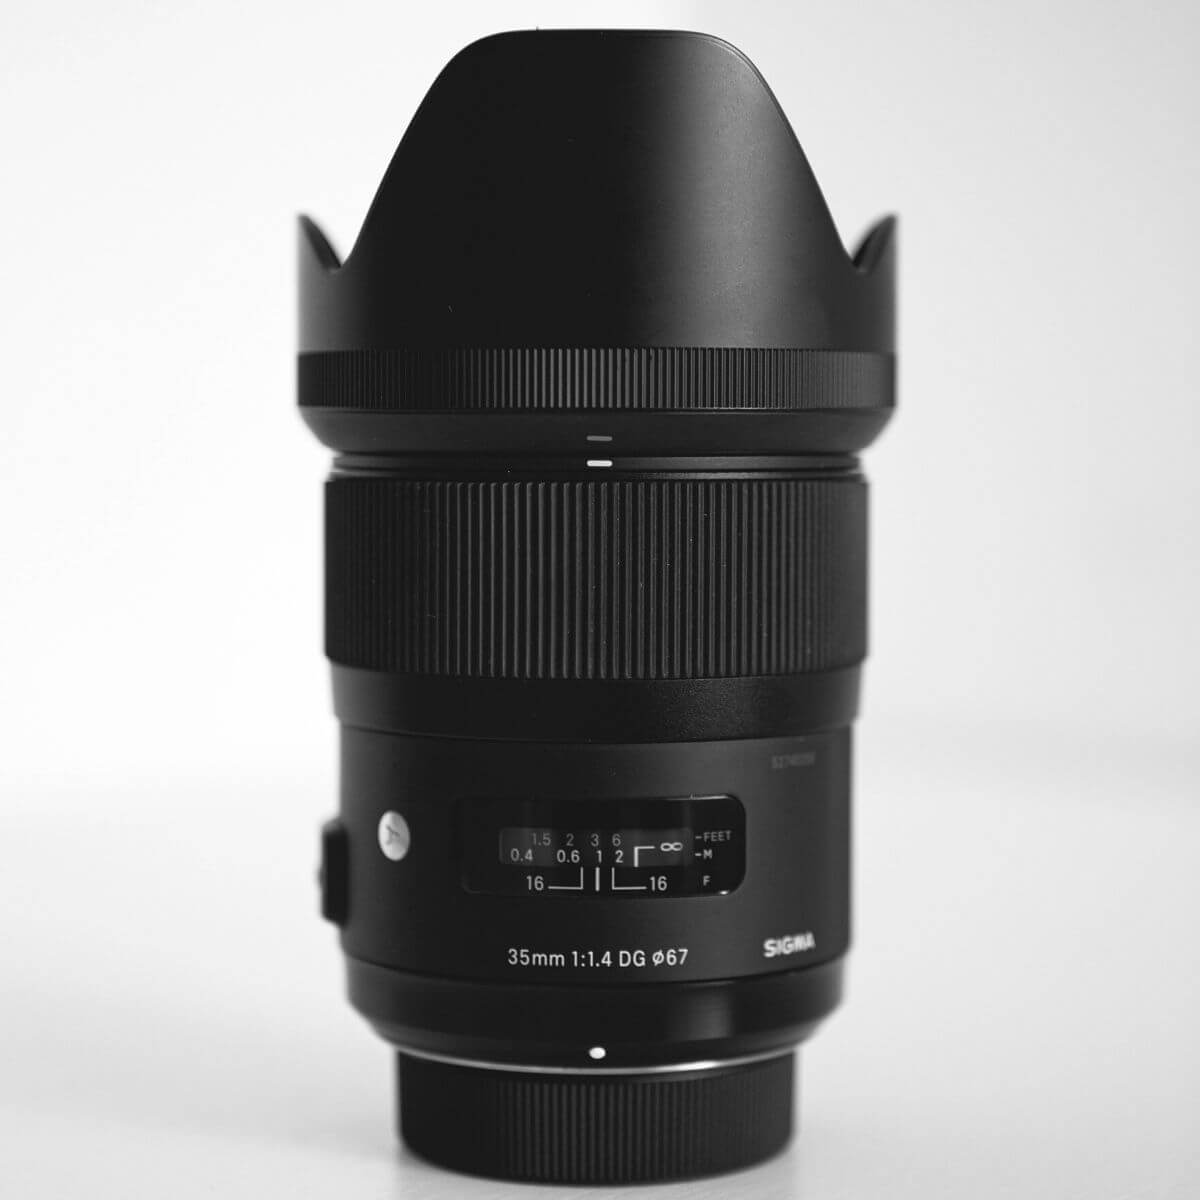 Sigma camera lens.